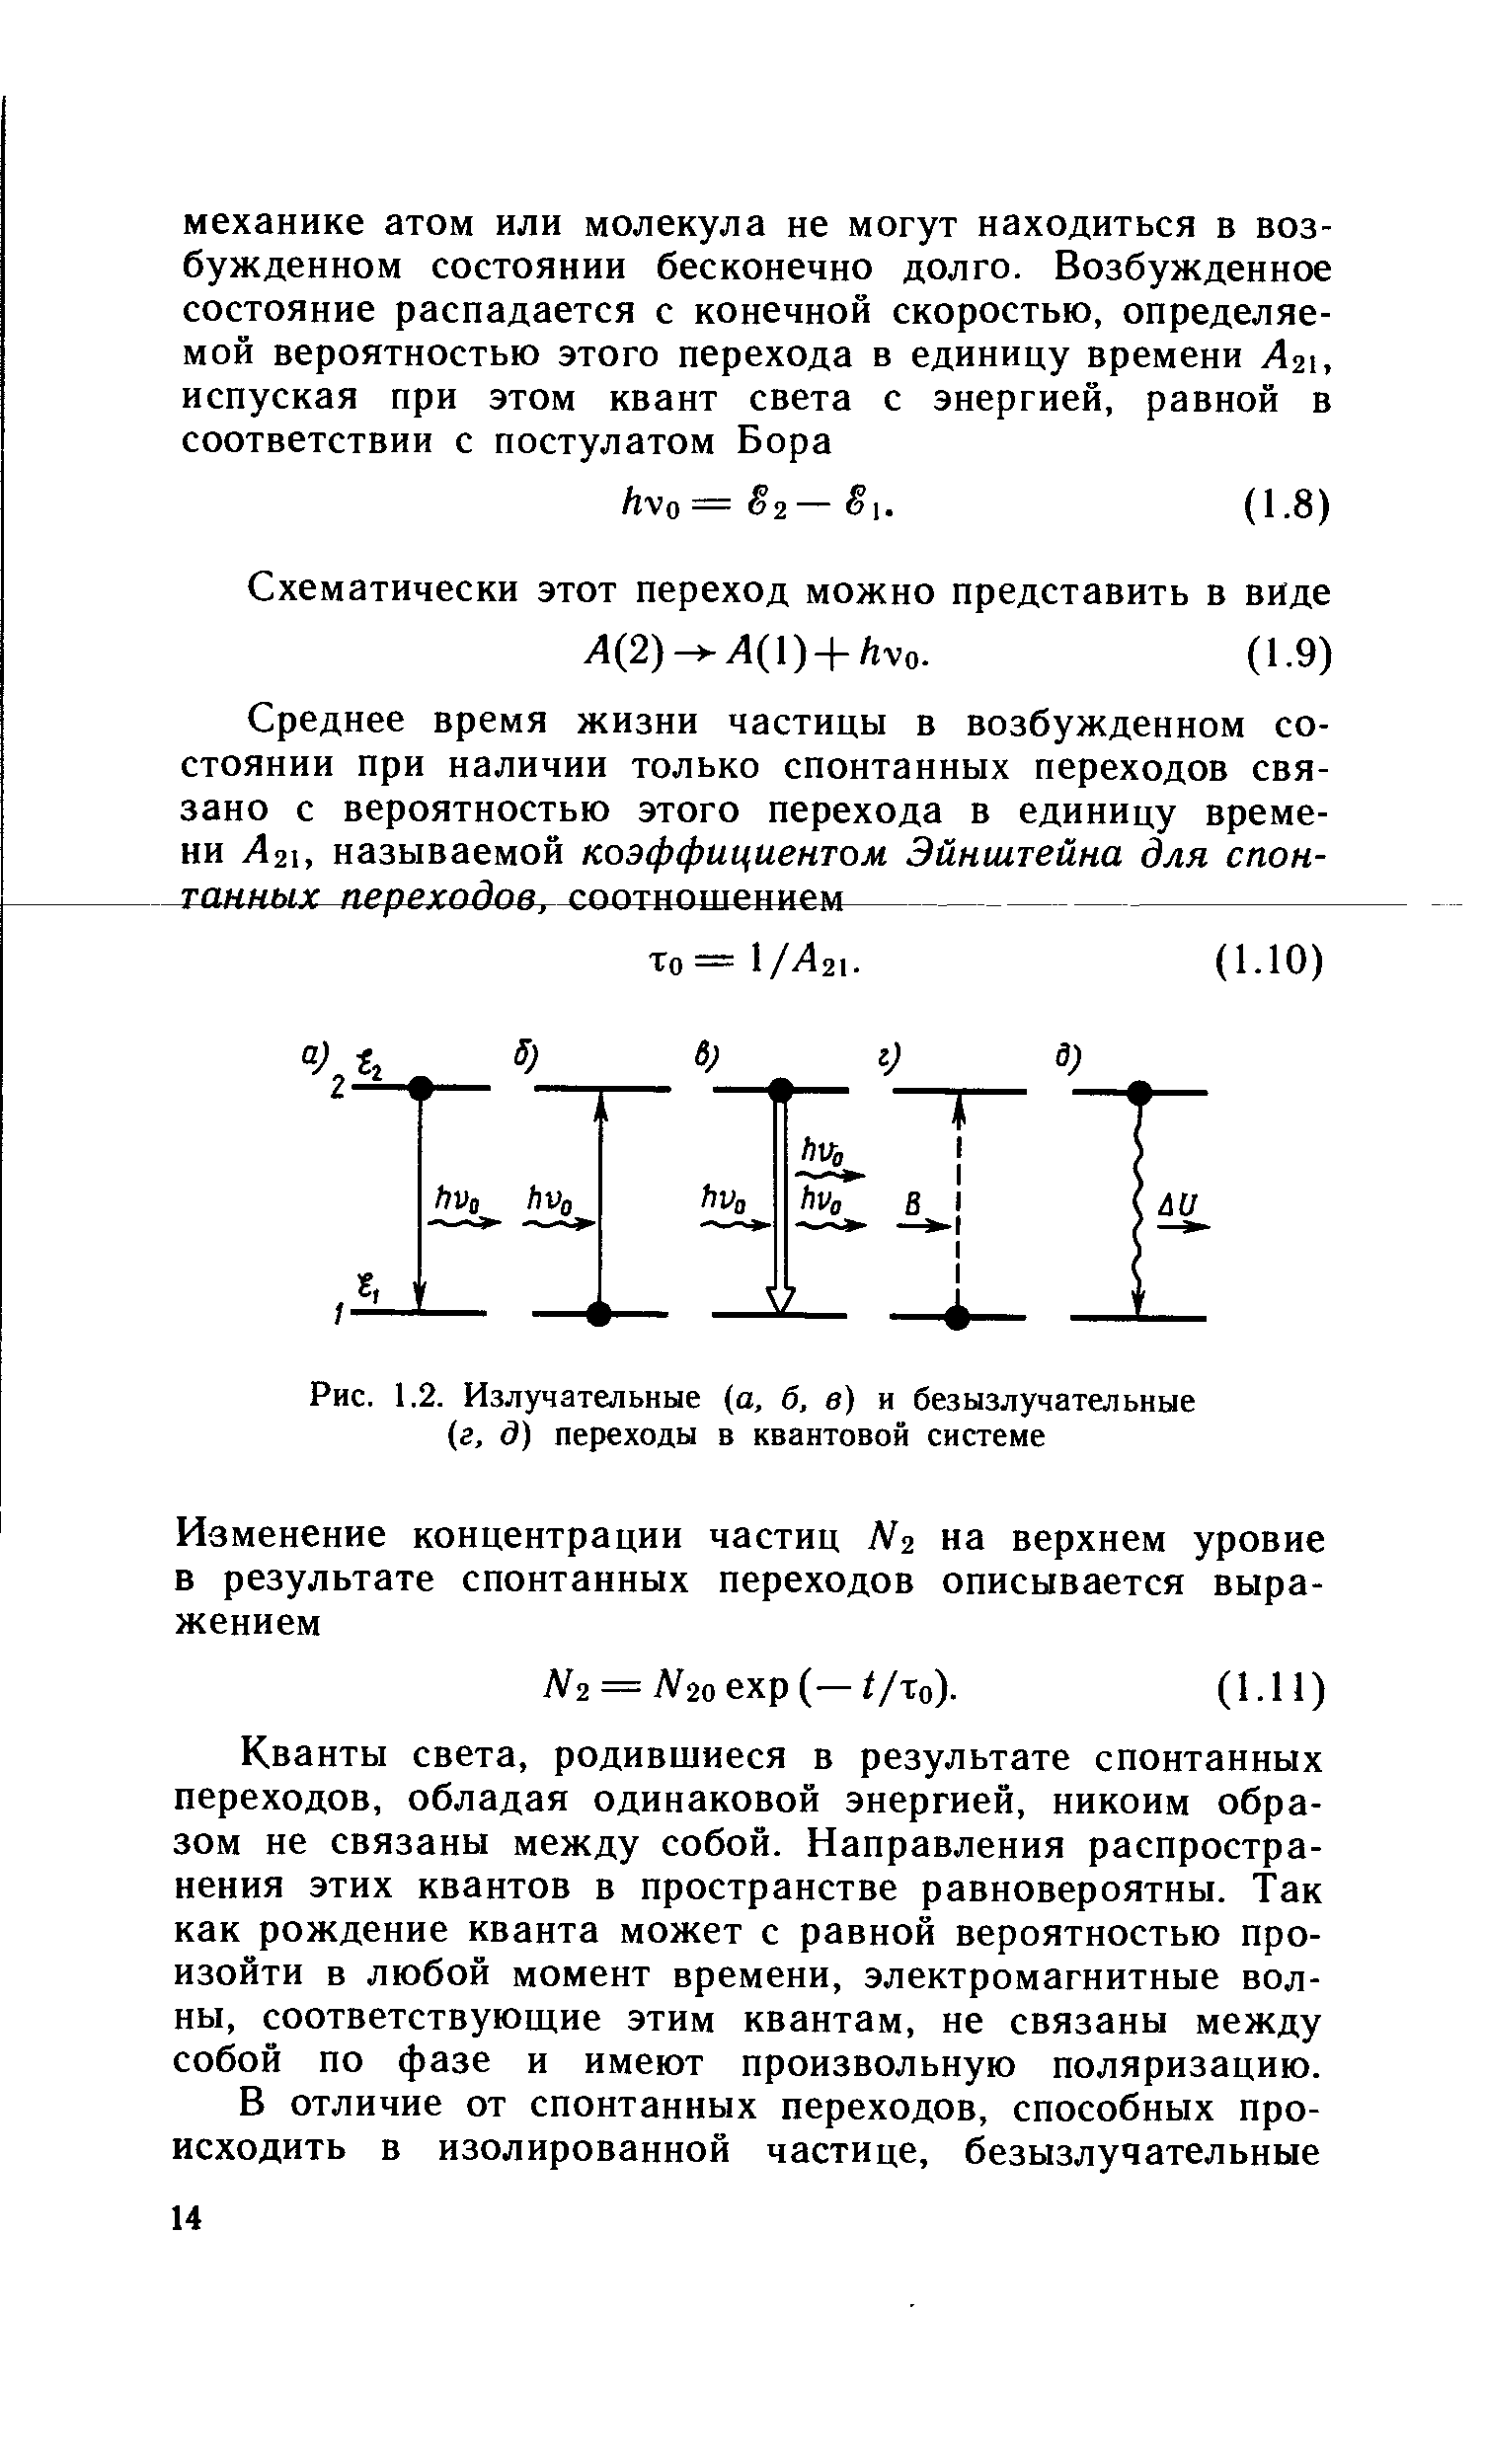 Рис. 1.2. Излучательные (а, б, в) и безызлучательные (г, д) переходы в квантовой системе
